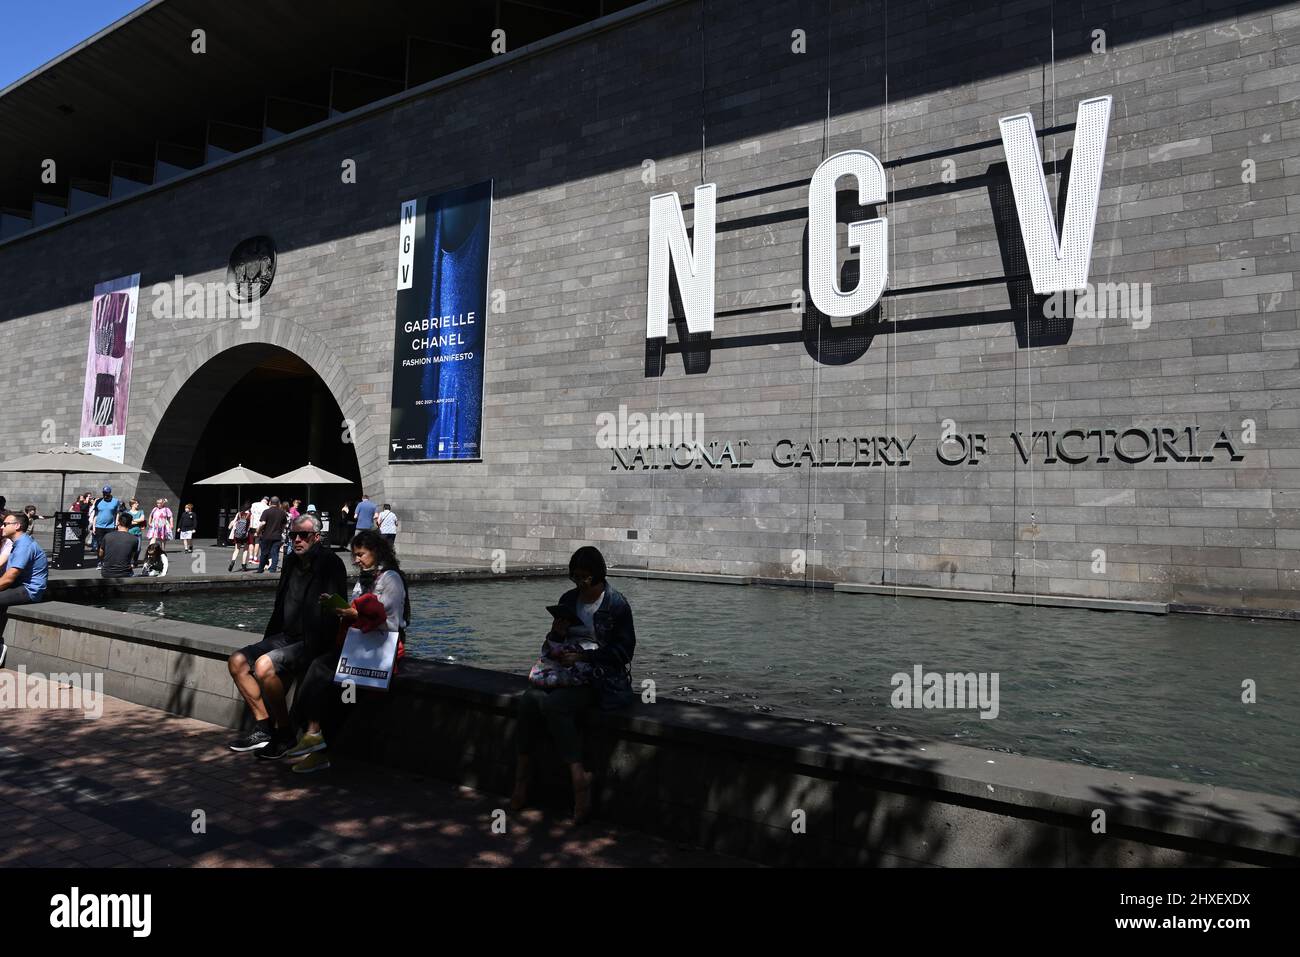 Neue Beschilderung der National Gallery of Victoria, mit NGV in fetten Schriftzügen, neben dem Haupteingang der Galerie, mit Menschen im Vordergrund Stockfoto